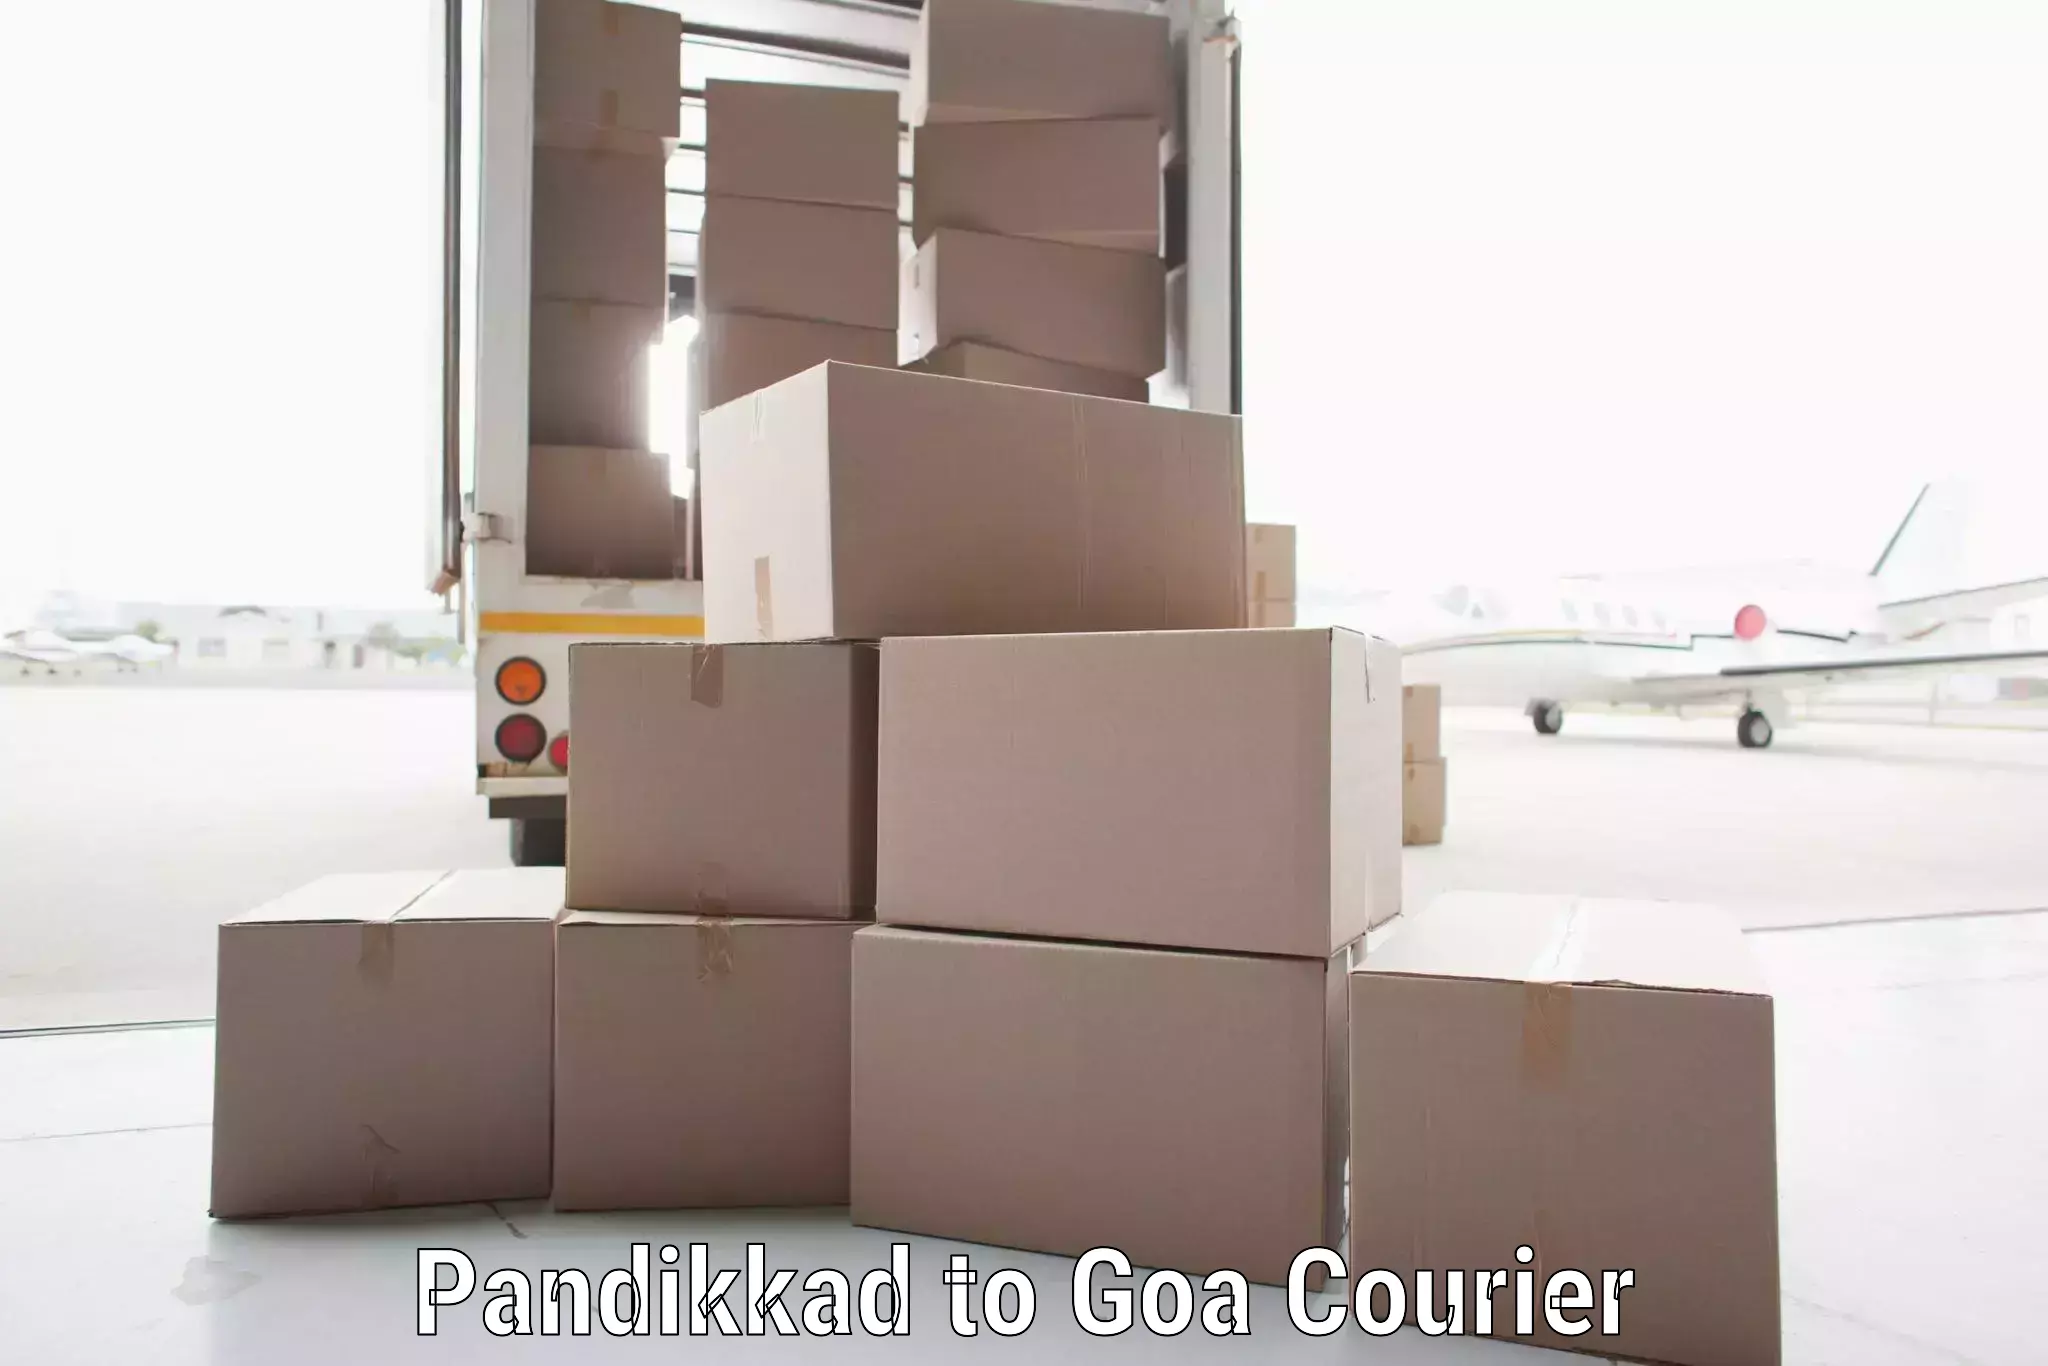 Global delivery options Pandikkad to Panjim